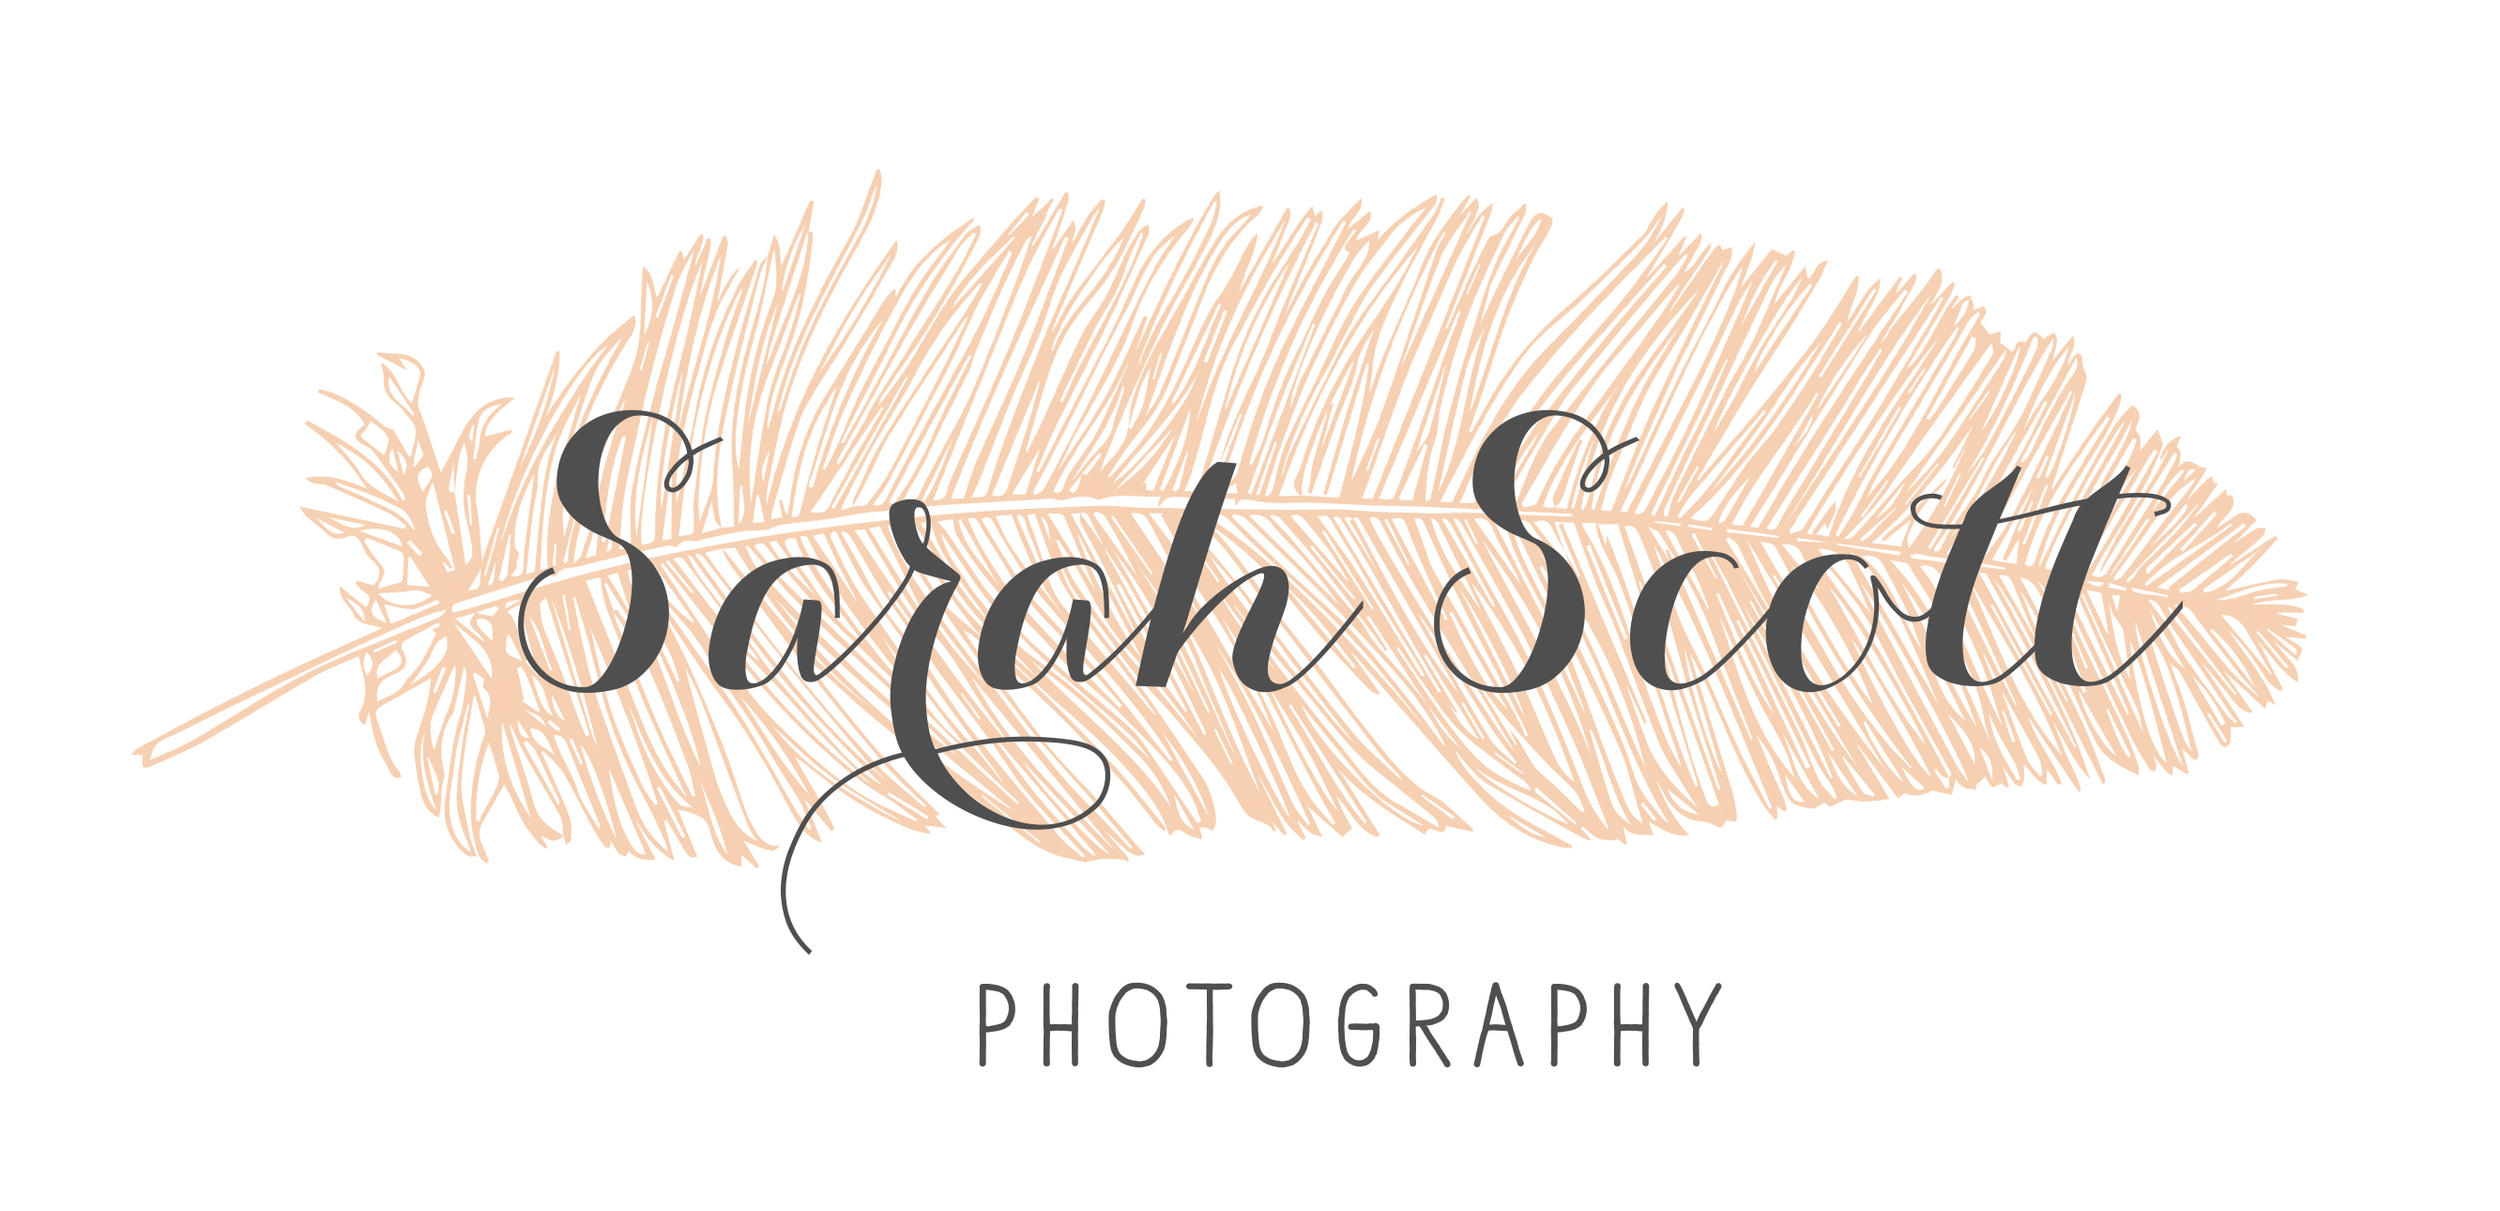 Sarah Scott Photography